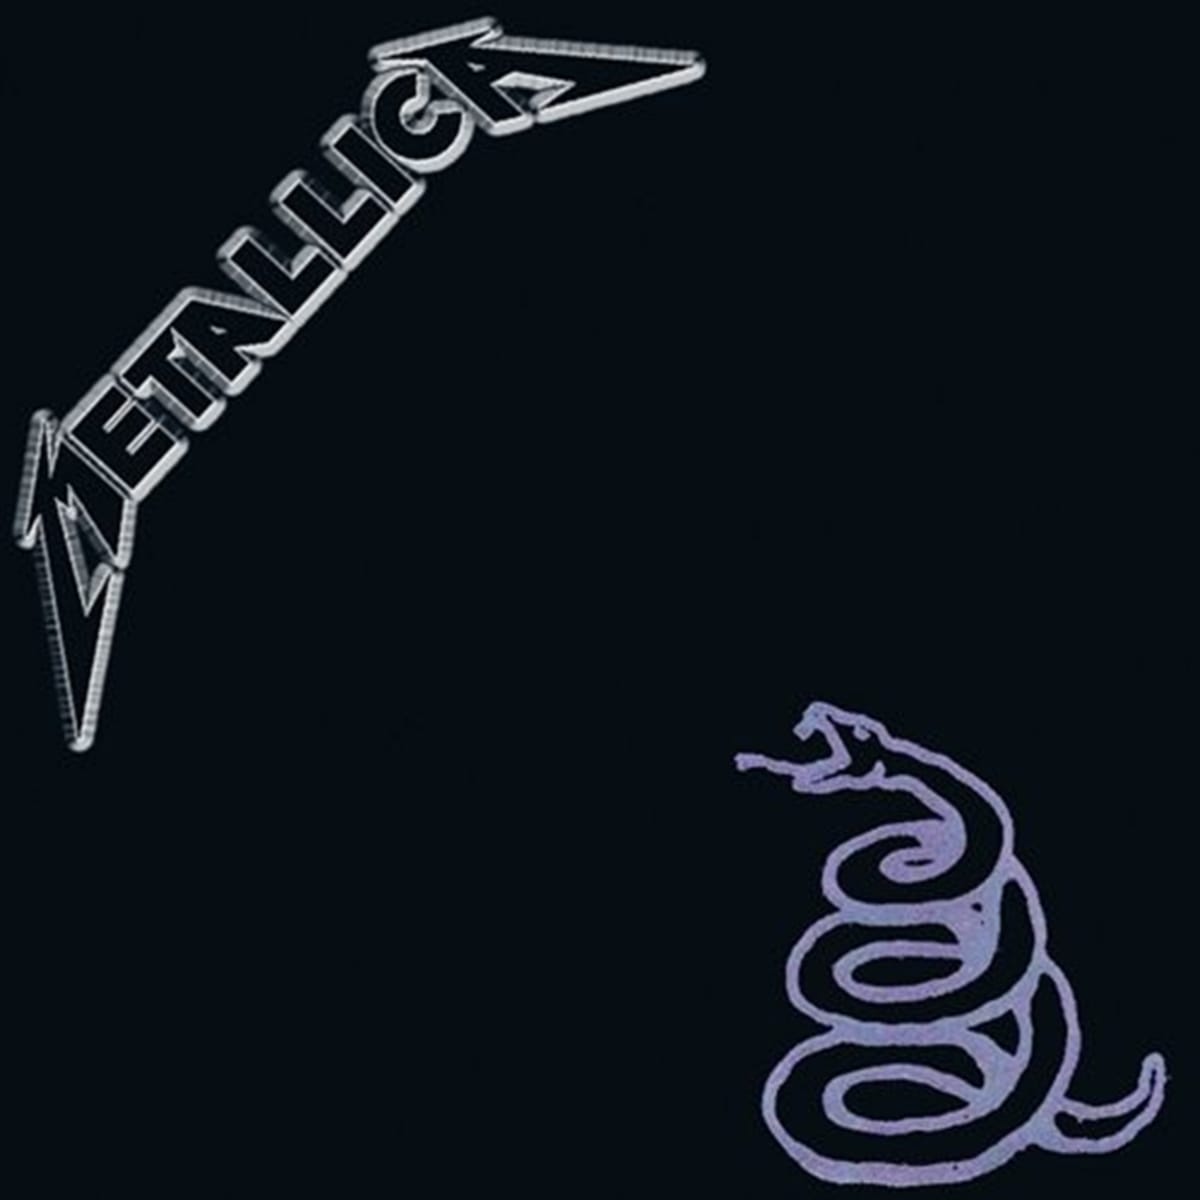 Dokončit komerčně nejúspěšnější počin skupiny Metallica nakonec trvalo deset měsíců, náklady překročily hranici milion dolarů.